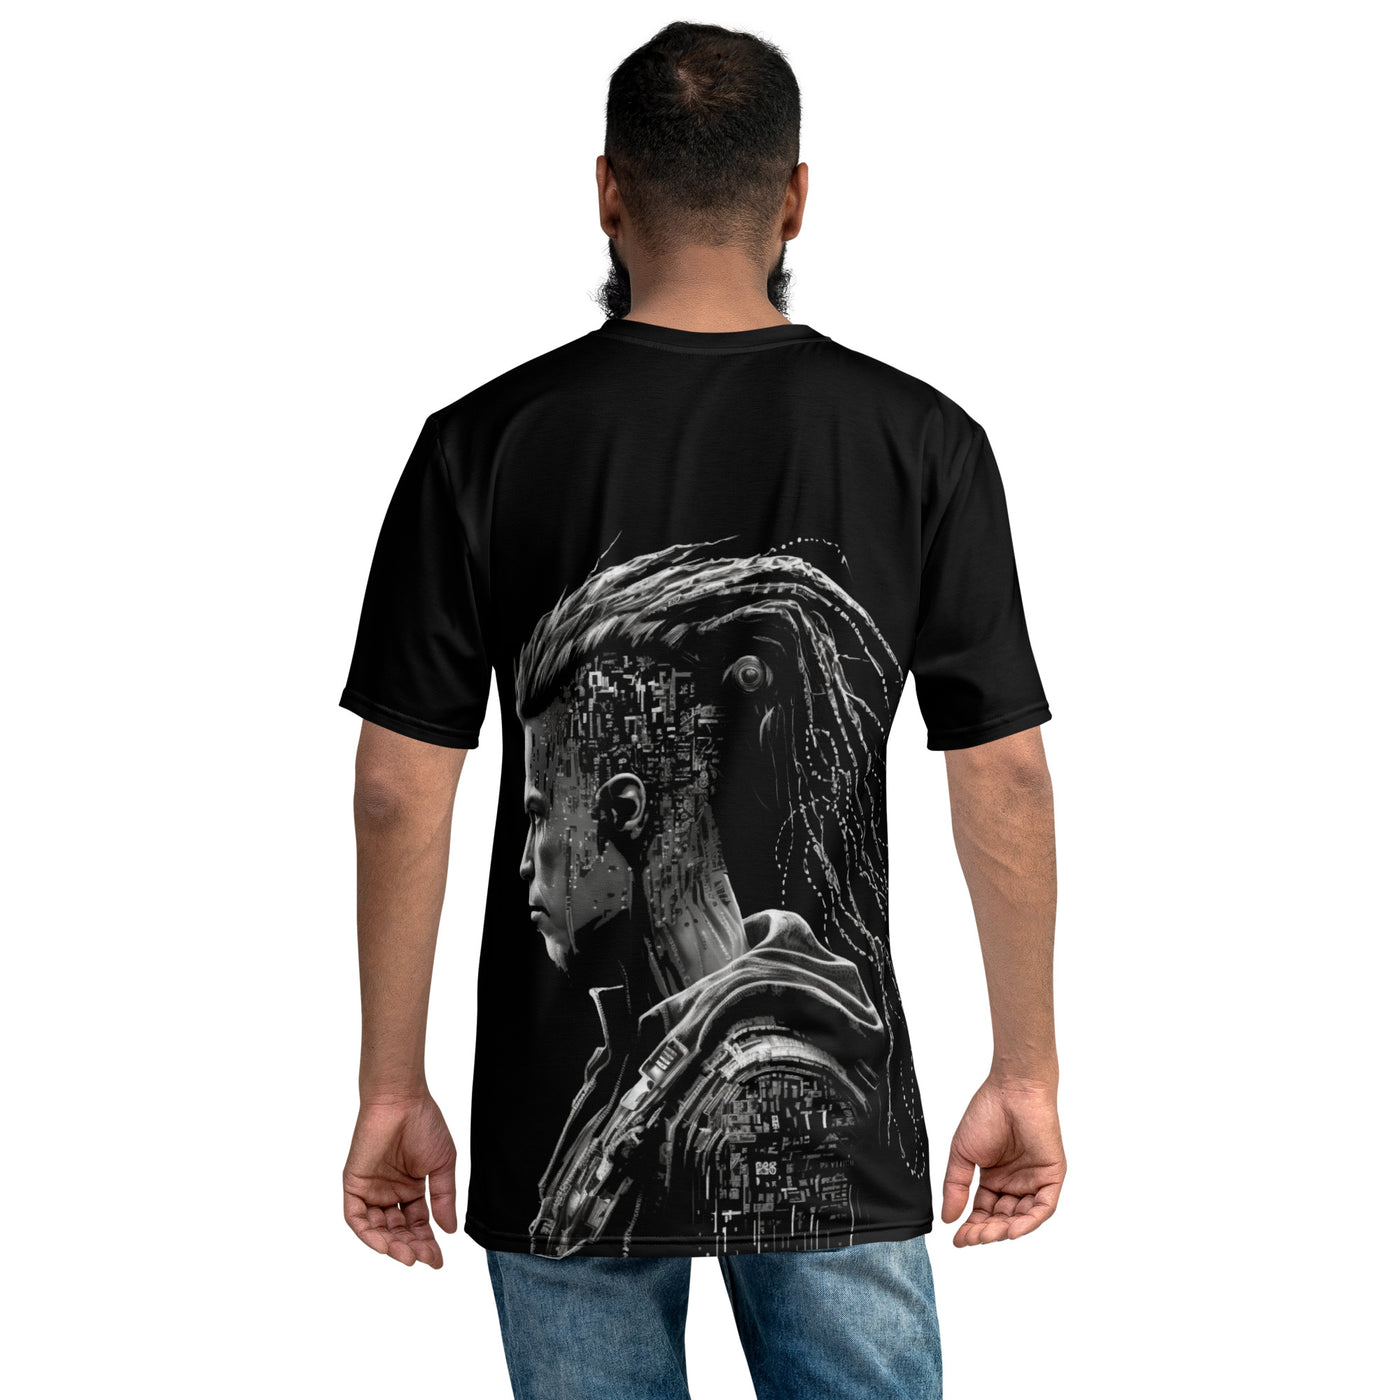 Cyberware assassin v32 - Men's t-shirt